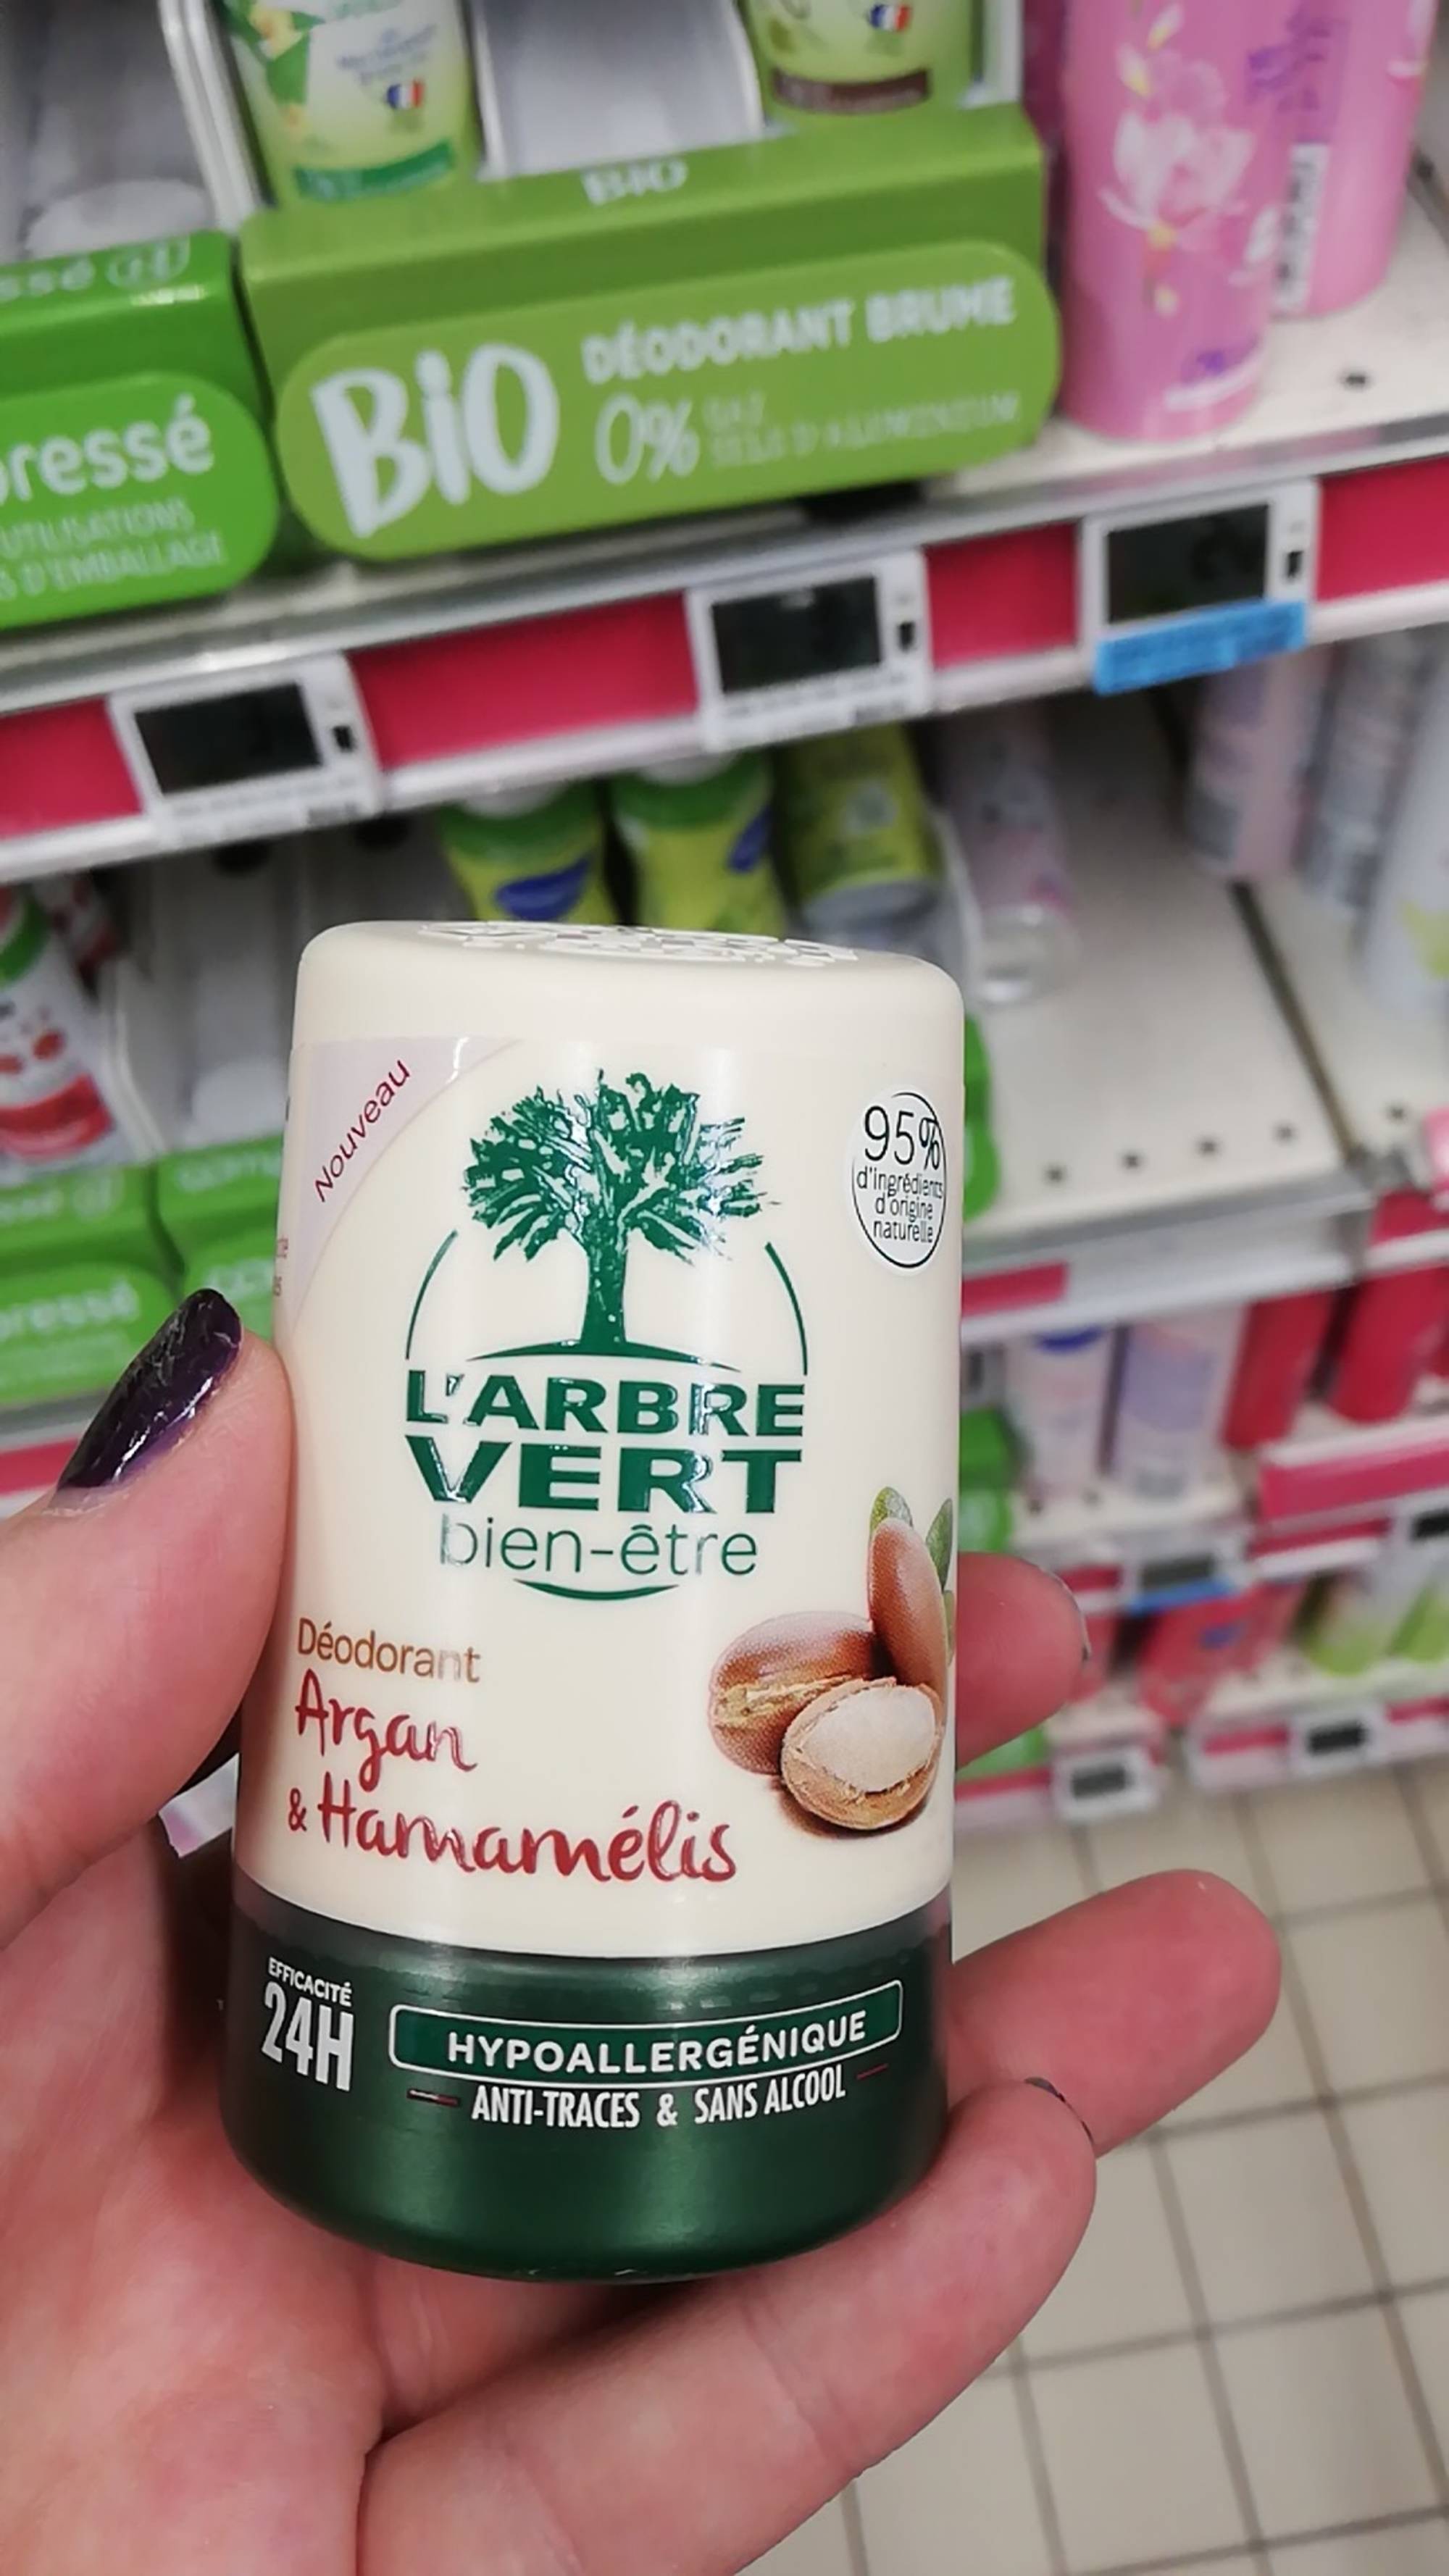 L'ARBRE VERT Lessive liquide savon végétal hypoallergénique 67